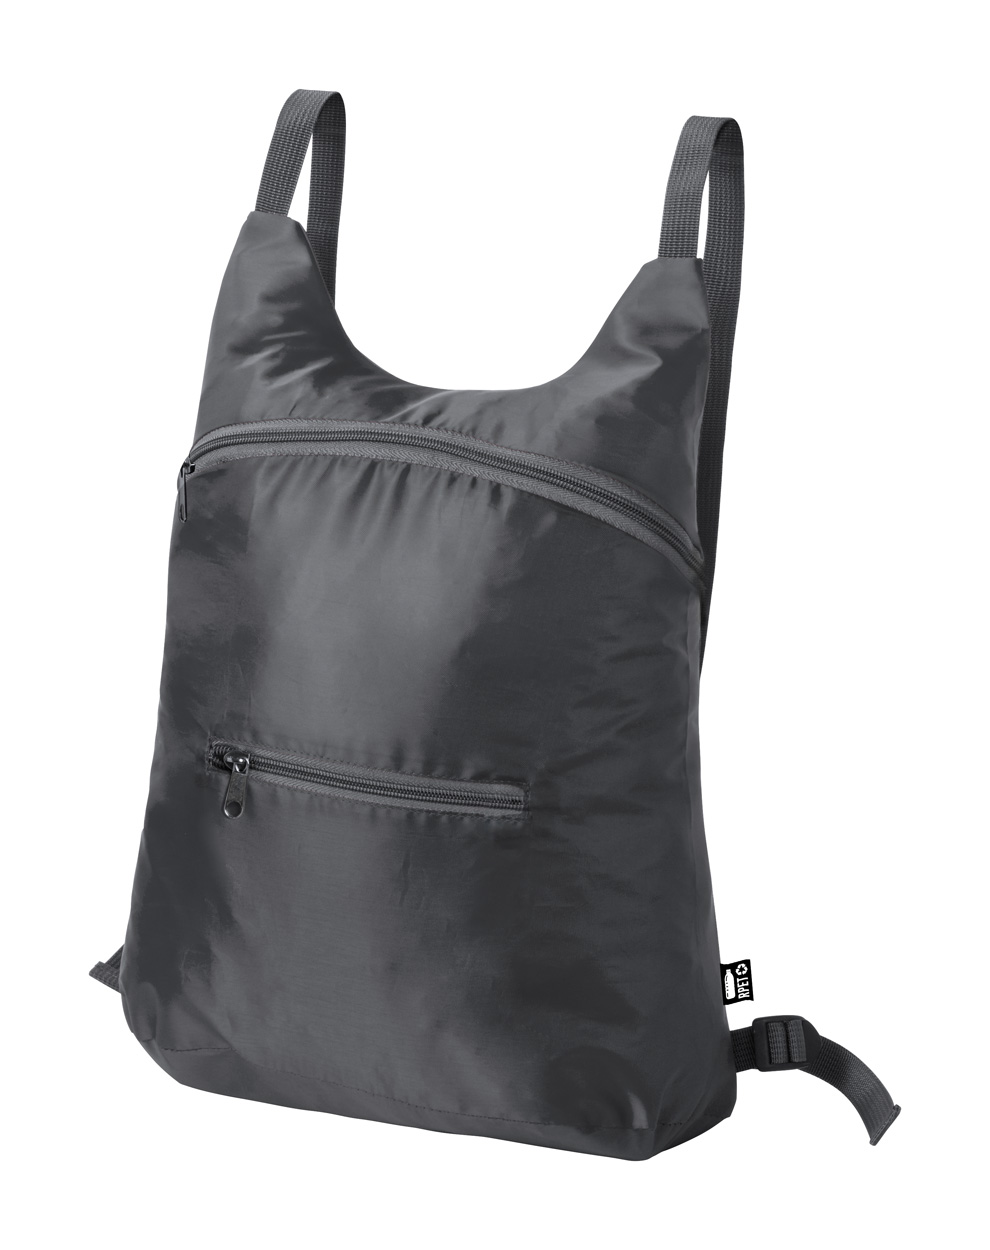 Brocky folding RPET backpack - grey